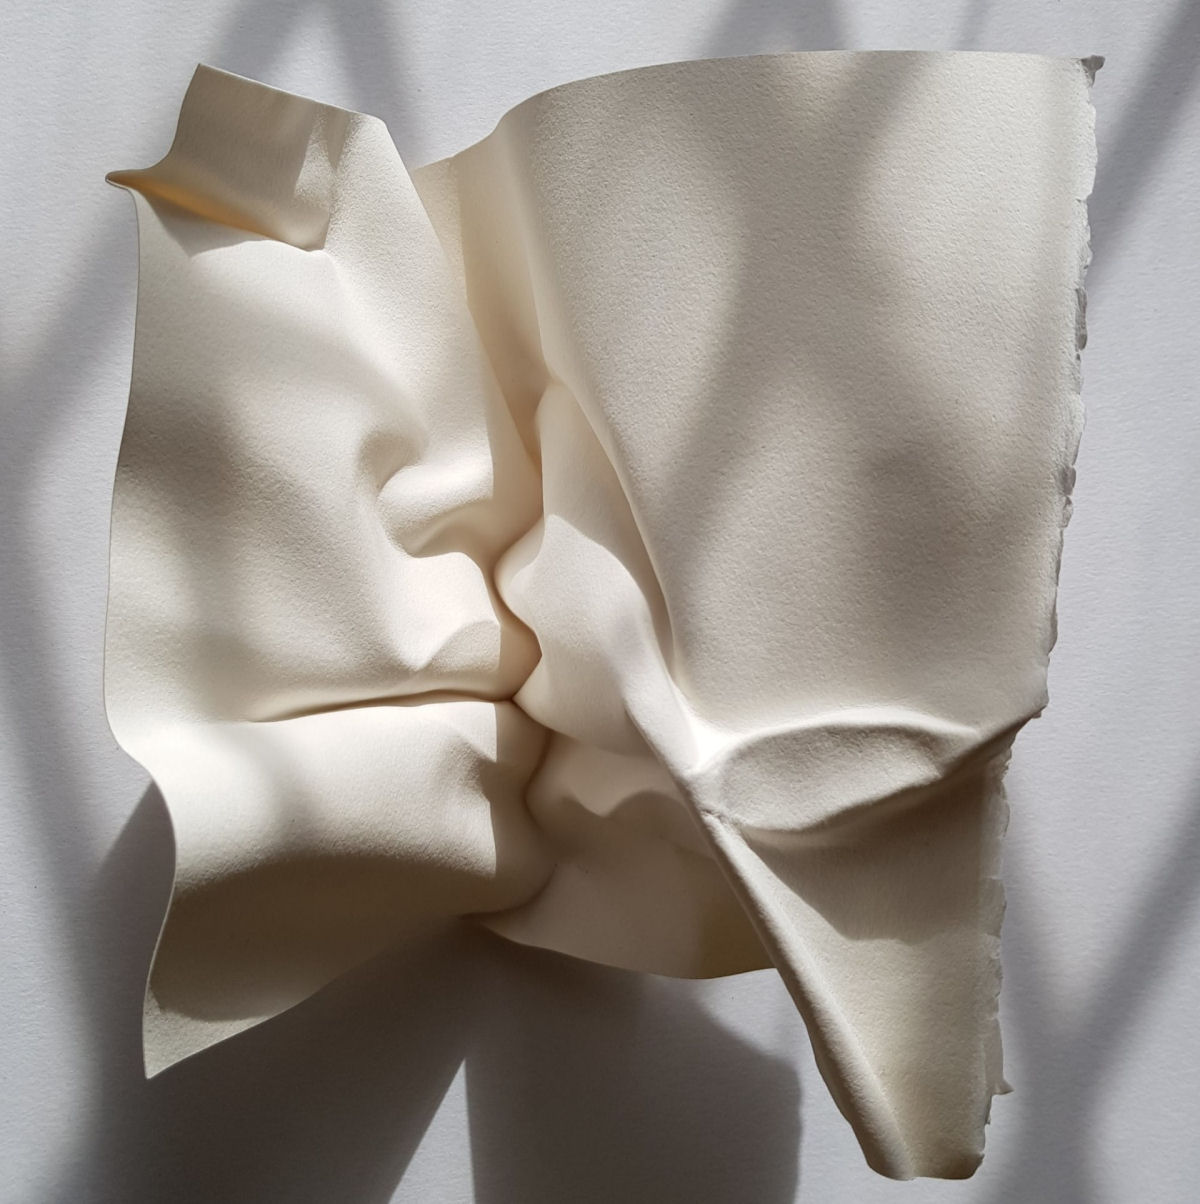 Esculturas sensuais em simples folhas de papel sugerem momentos de intimidade 06